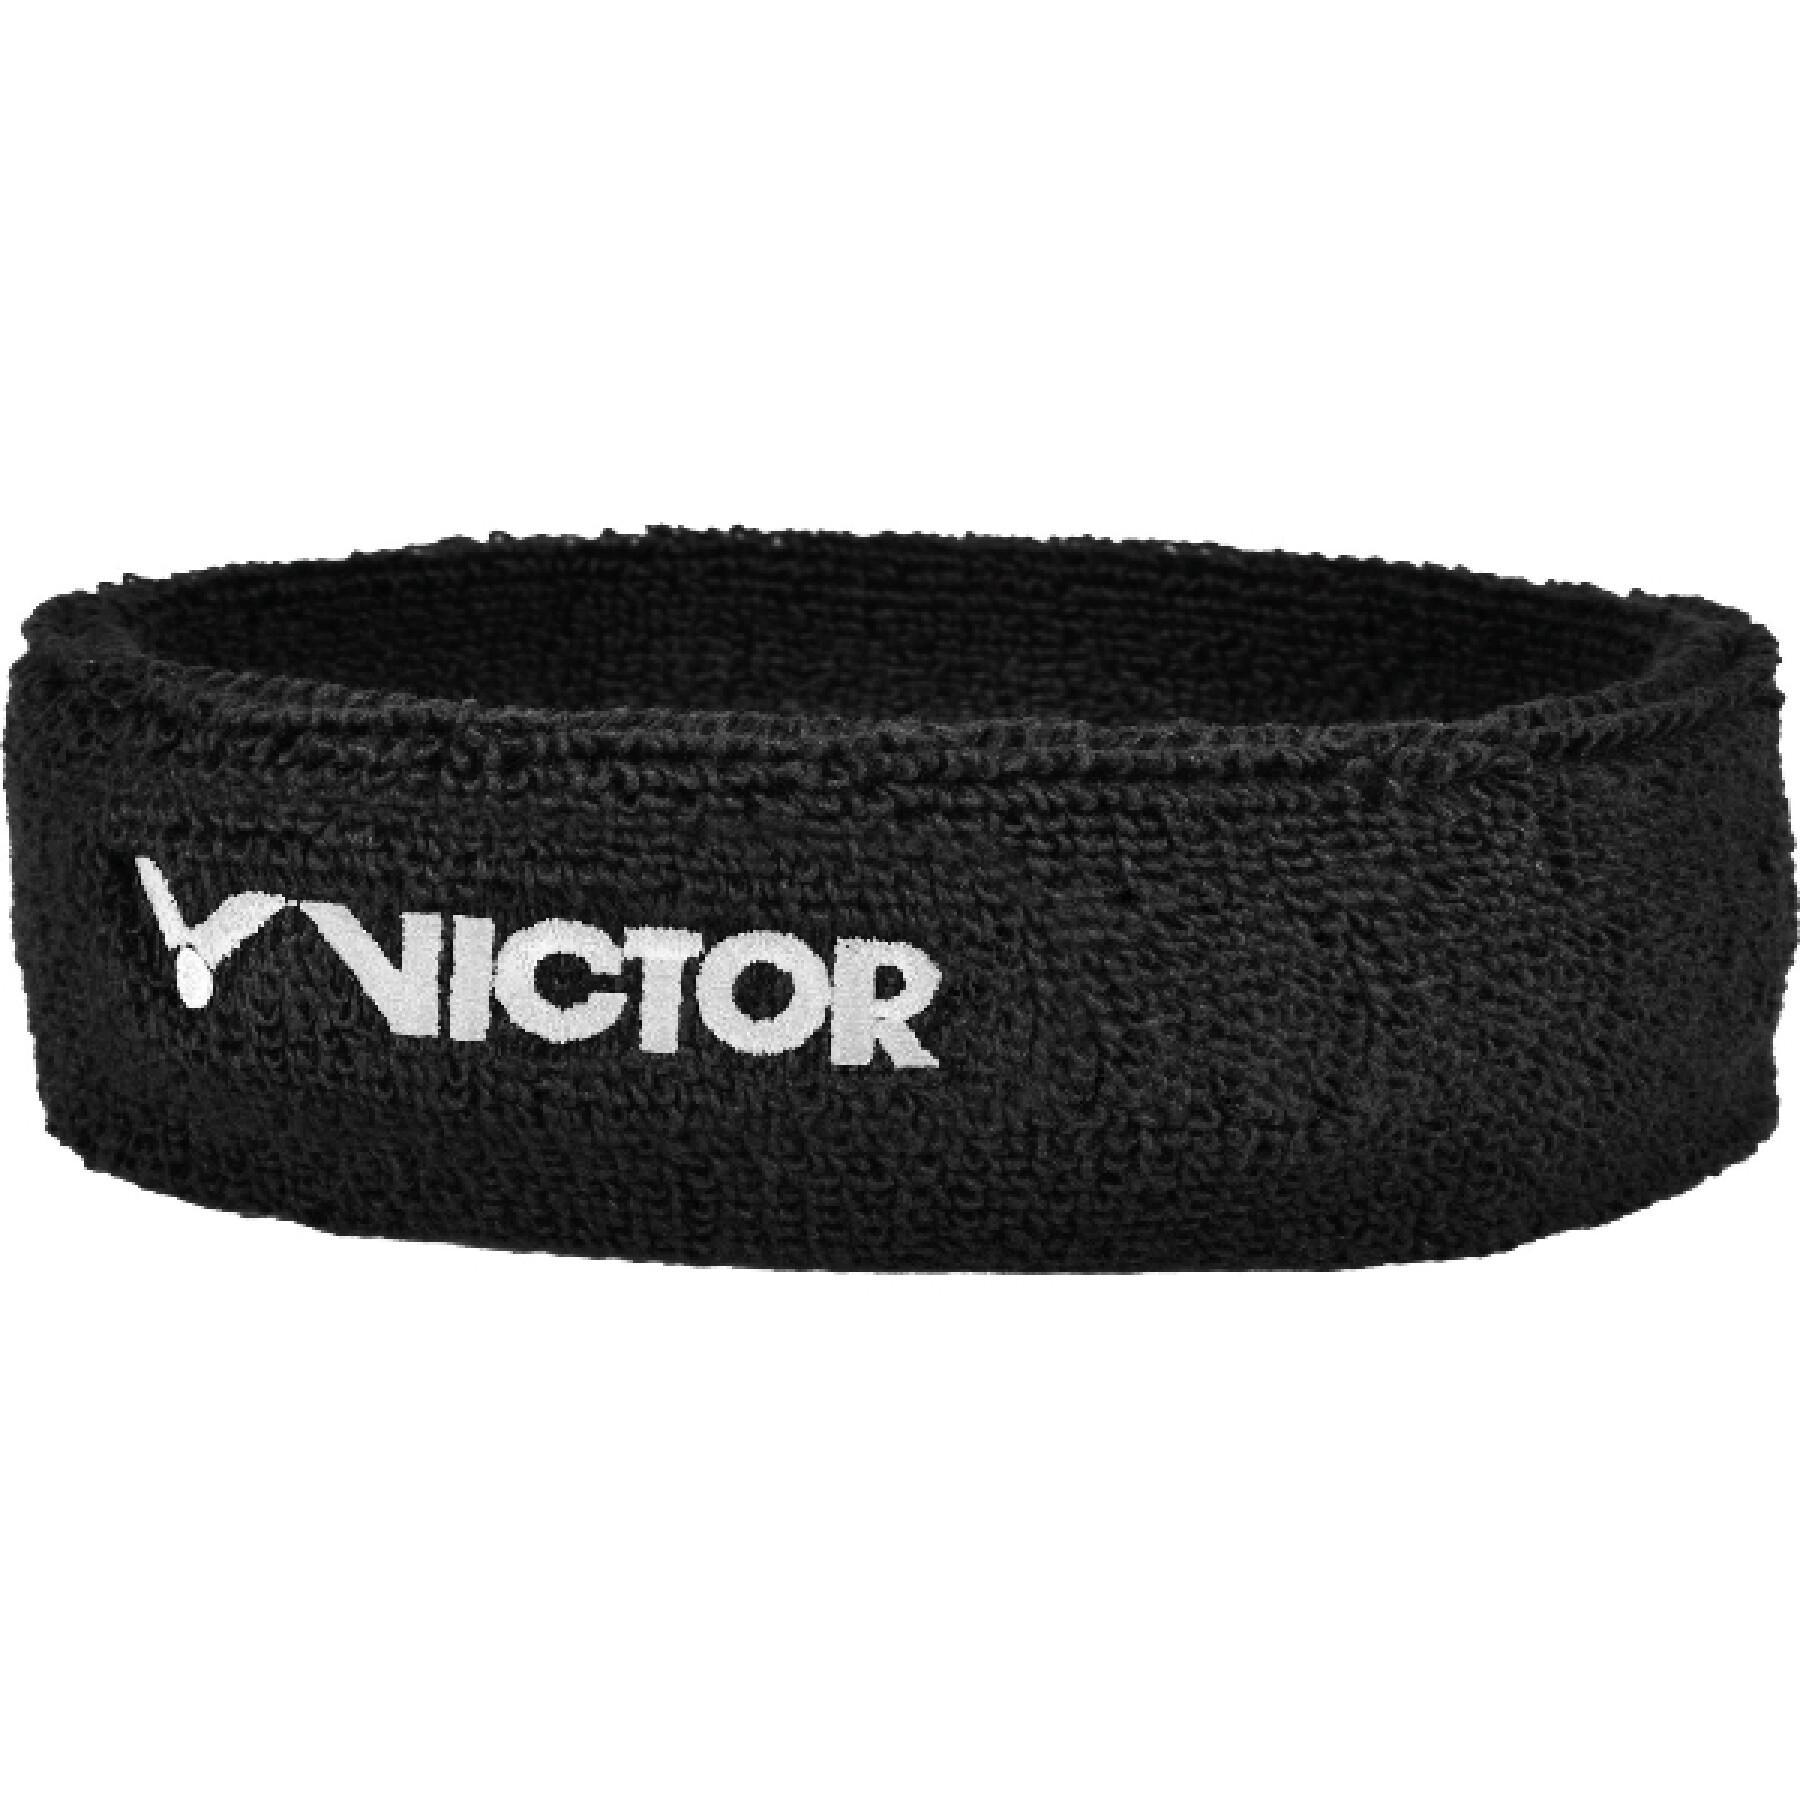 Stirnband Victor